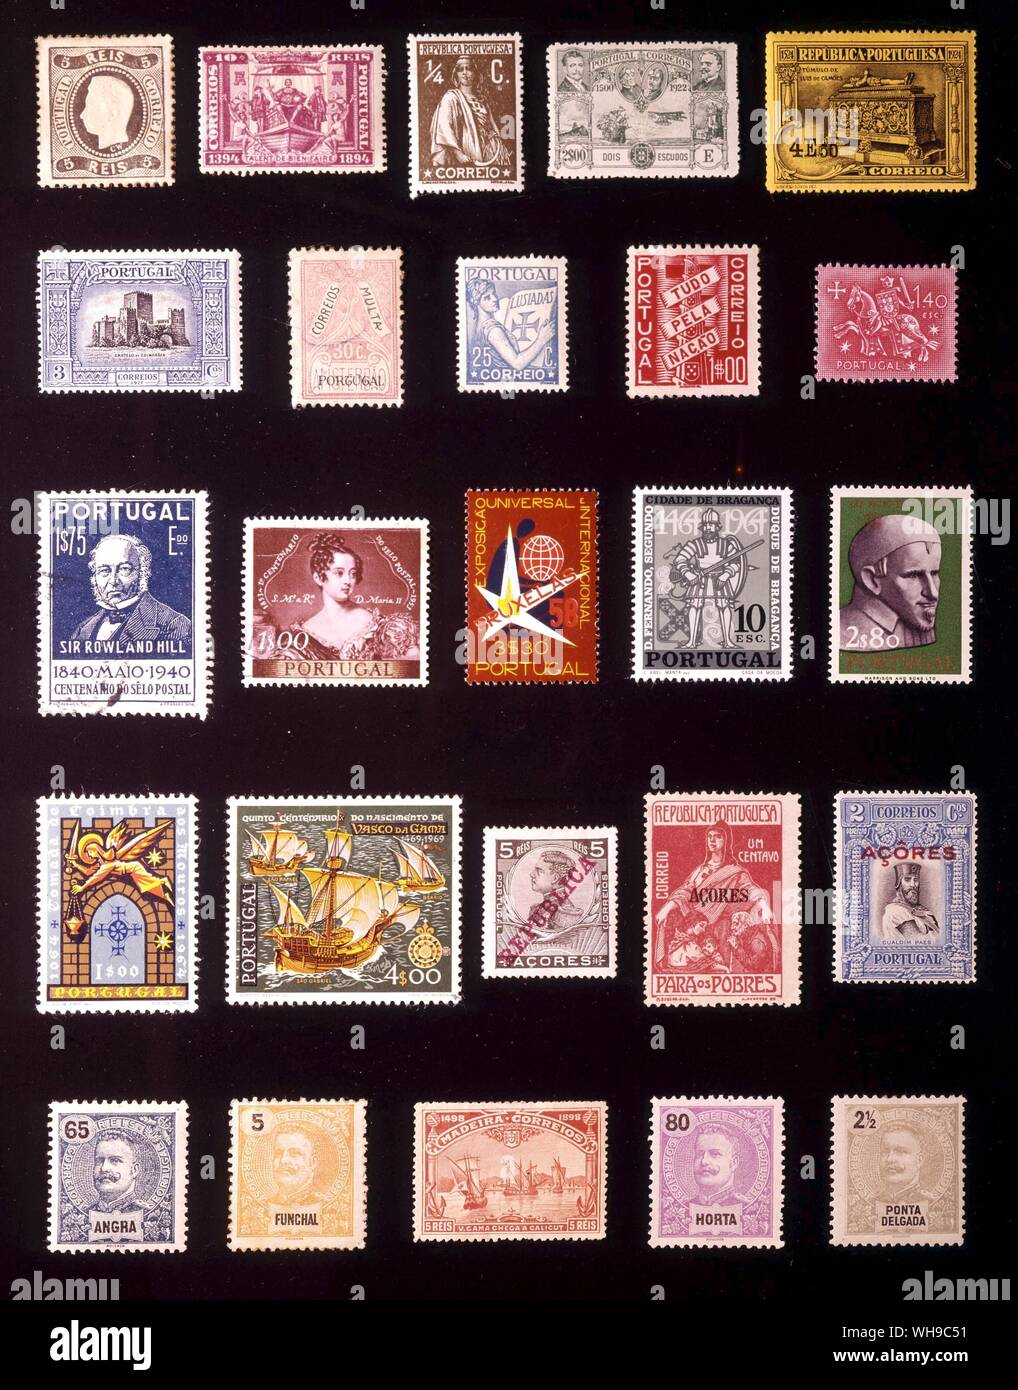 EUROPE - PORTUGAL: (left to right) 1. 5 reis, 1867, 2. 10 reis, 1894, 3. 0.25 centavo, 1912, 4. escudos, 1923, 5. 4 escudos, 1924, 6. 3 centavos, 1926, 7. 30 centavos, 1928, 8. 25 centavos, 1934, 9. 1 escudo, 1935, 10. 1.40 escudos, 1953, 11. 1.75 escudos, 1940, 12. 1 escudo, 1953, 13. 3.30 escudos, 1958, 14. 10 escudos, 1965, 15. 2.80 escudos, 1963, 16. 1 escudos, 1965, 17. 4 escudos, 1969, 18. Azores, 5 reis, 1910, 19. Azores, 1 centavo, 1915, 20. Azores, 2 centavos, 1926, 21. Angra, 65 reis, 1897, 22. Funchal, 5 reis, 1897, 23. Madeeira, 5 reis, 1898, 24. Horta, 80 reis, 1897, 25 Ponta Stock Photo